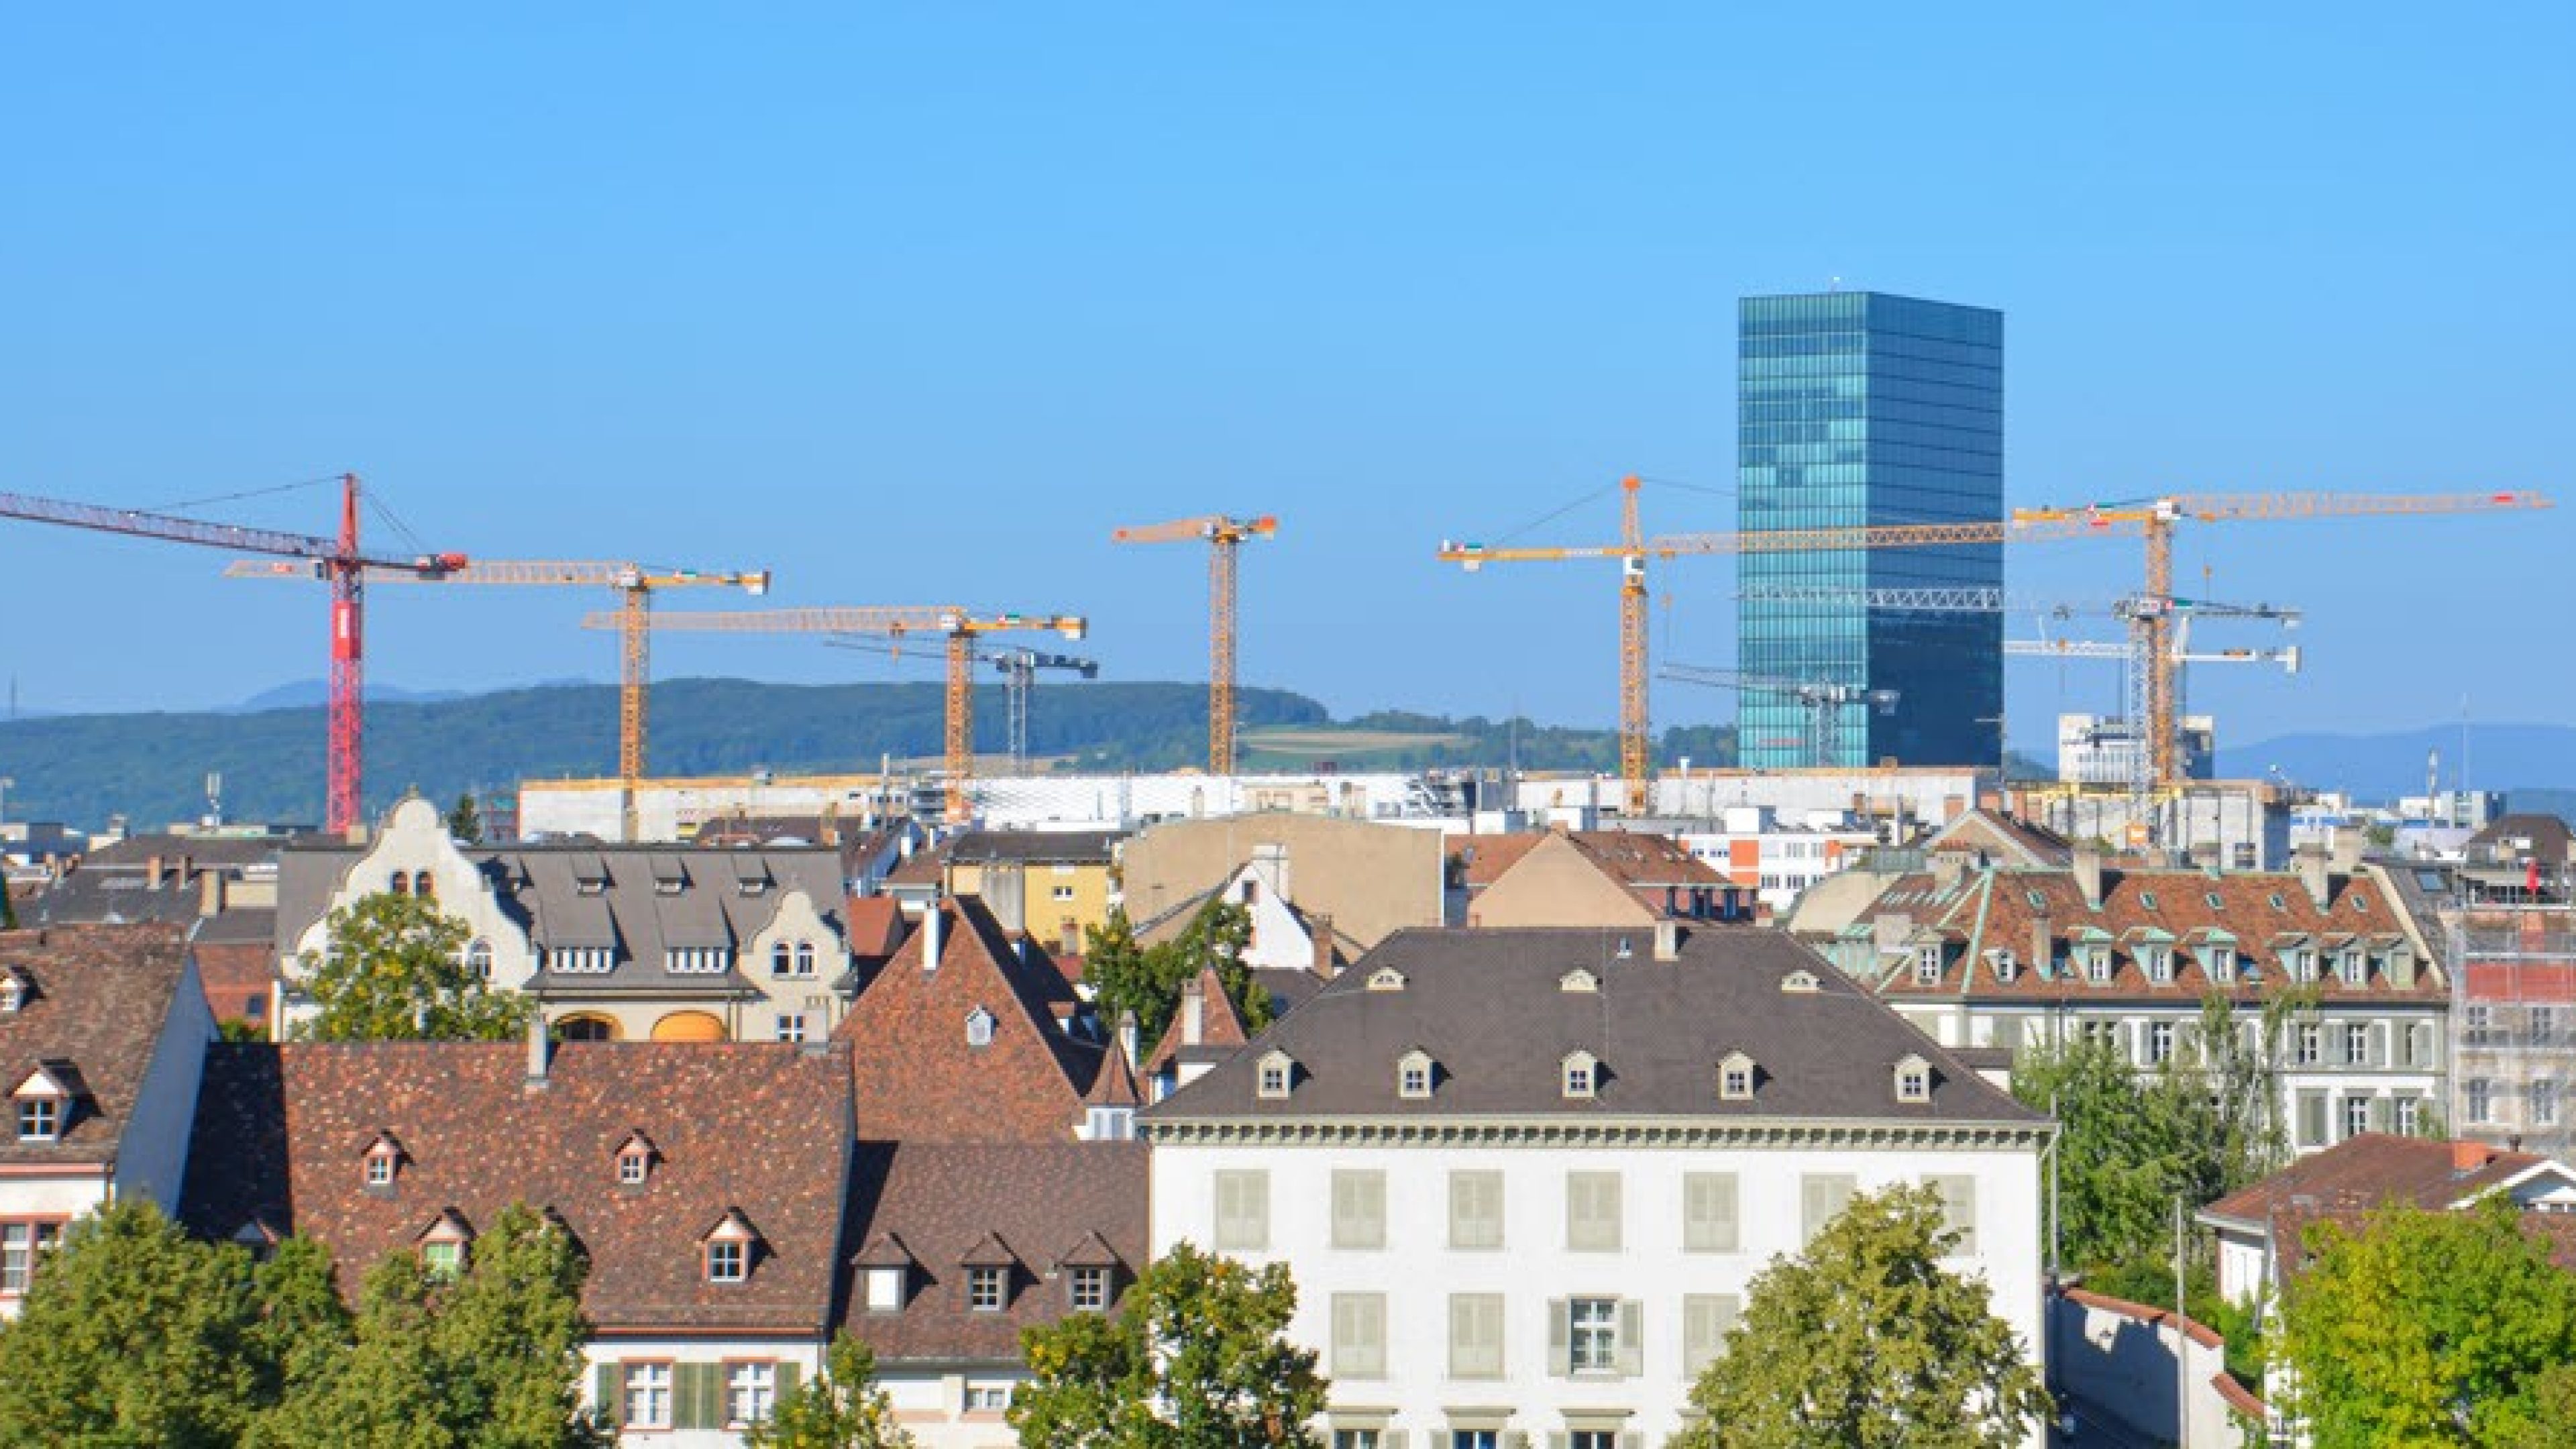 Tetti e Primetower di Zurigo, con molte gru da costruzione